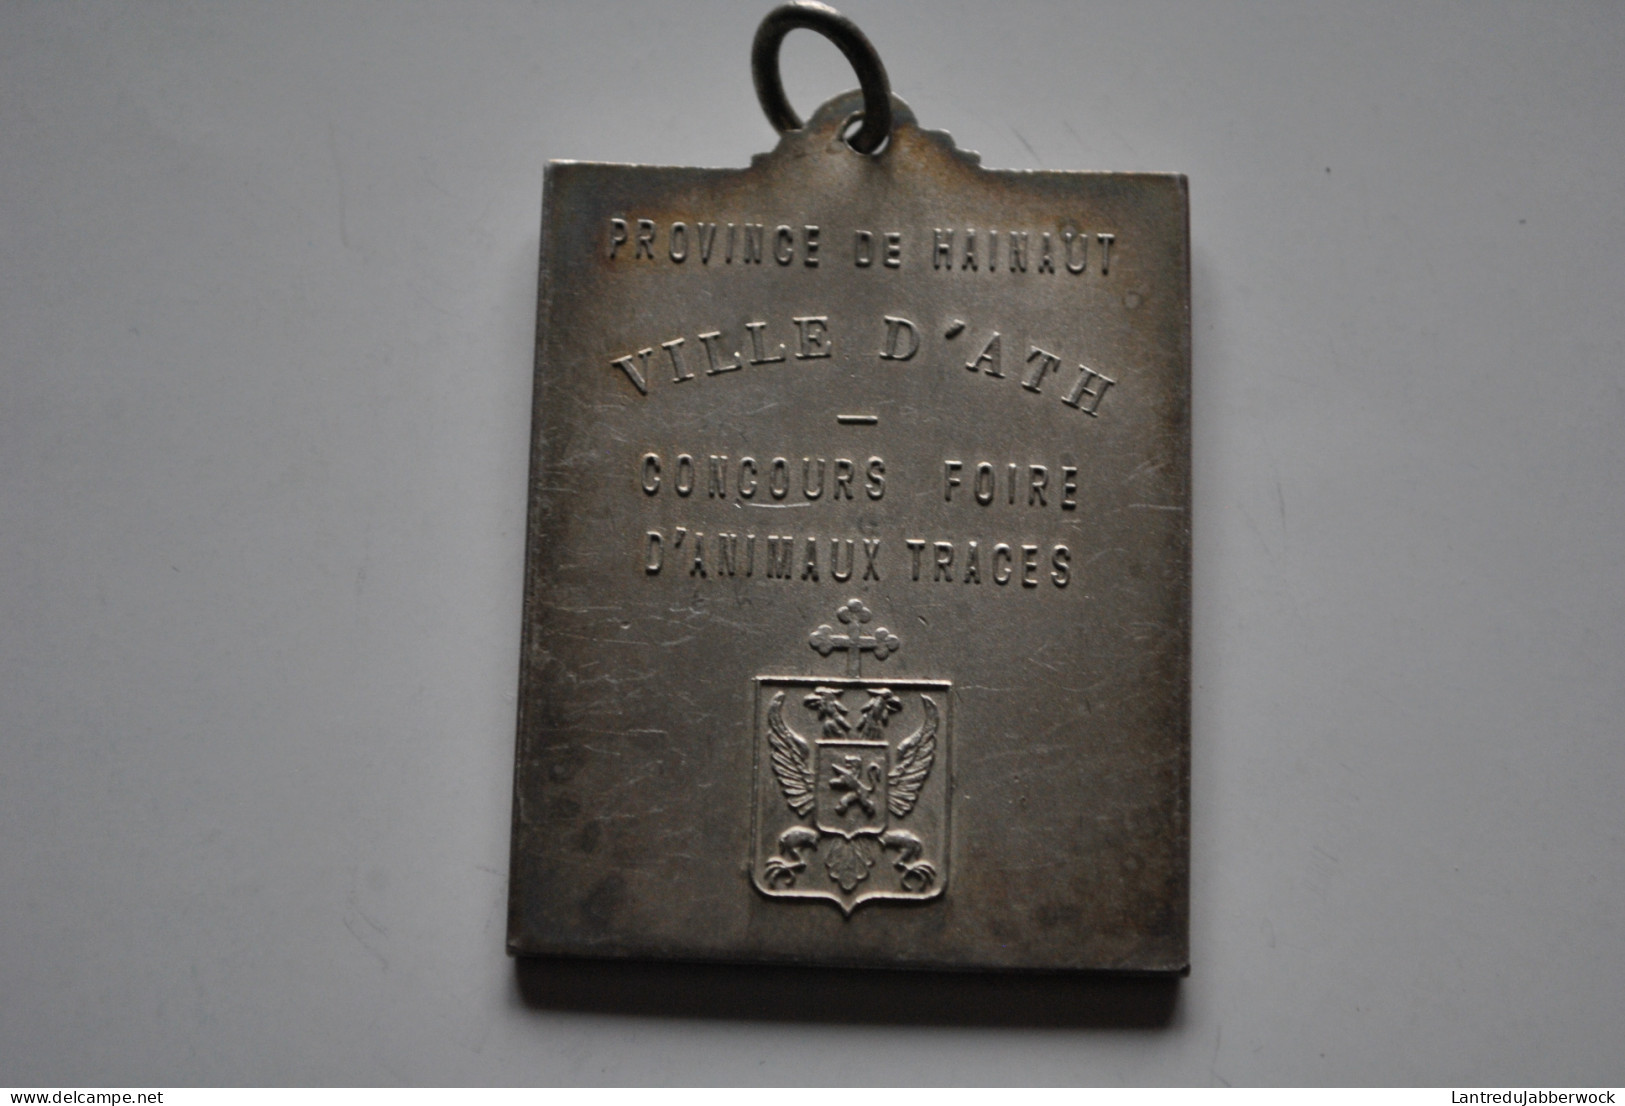 Médaille En Métal Argenté Ville D'Ath Concours Foire D'animaux Traces Armes Armoiries De La (45 X 60 Mm) Beffroi - Gemeindemünzmarken